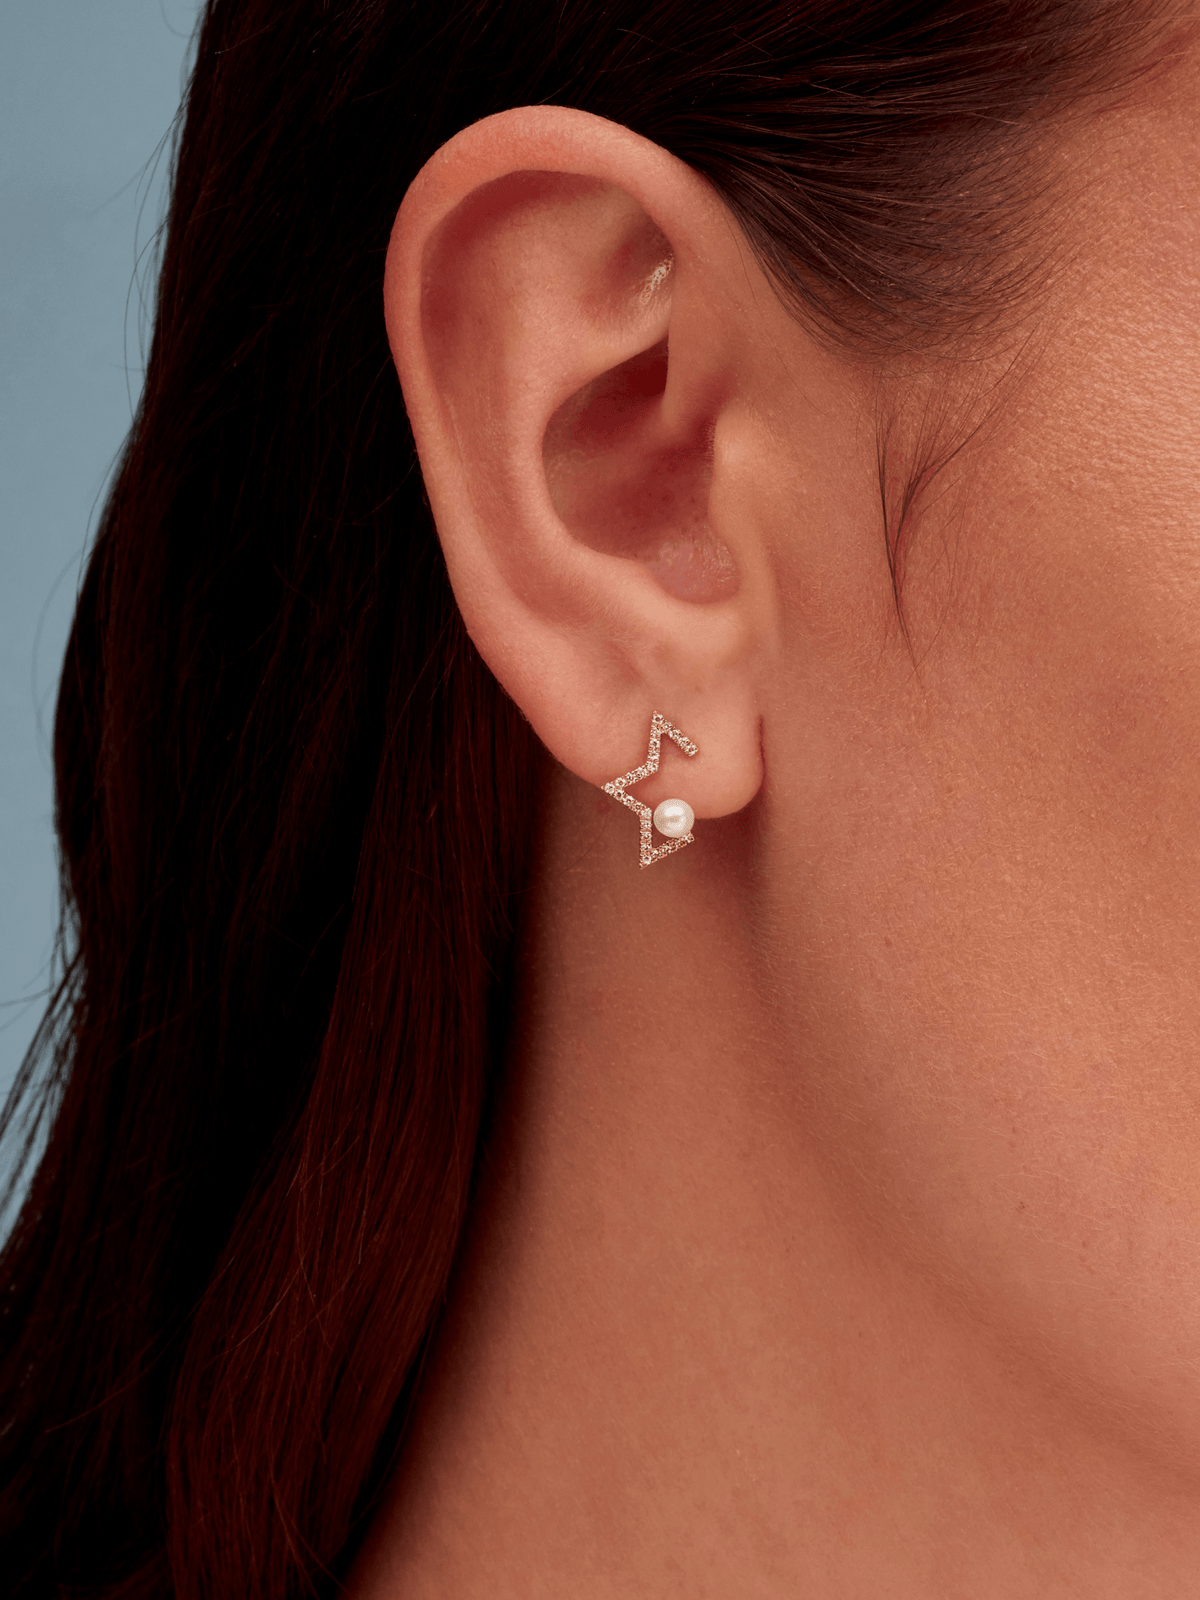 Pearl star earring with diamonds on model ear